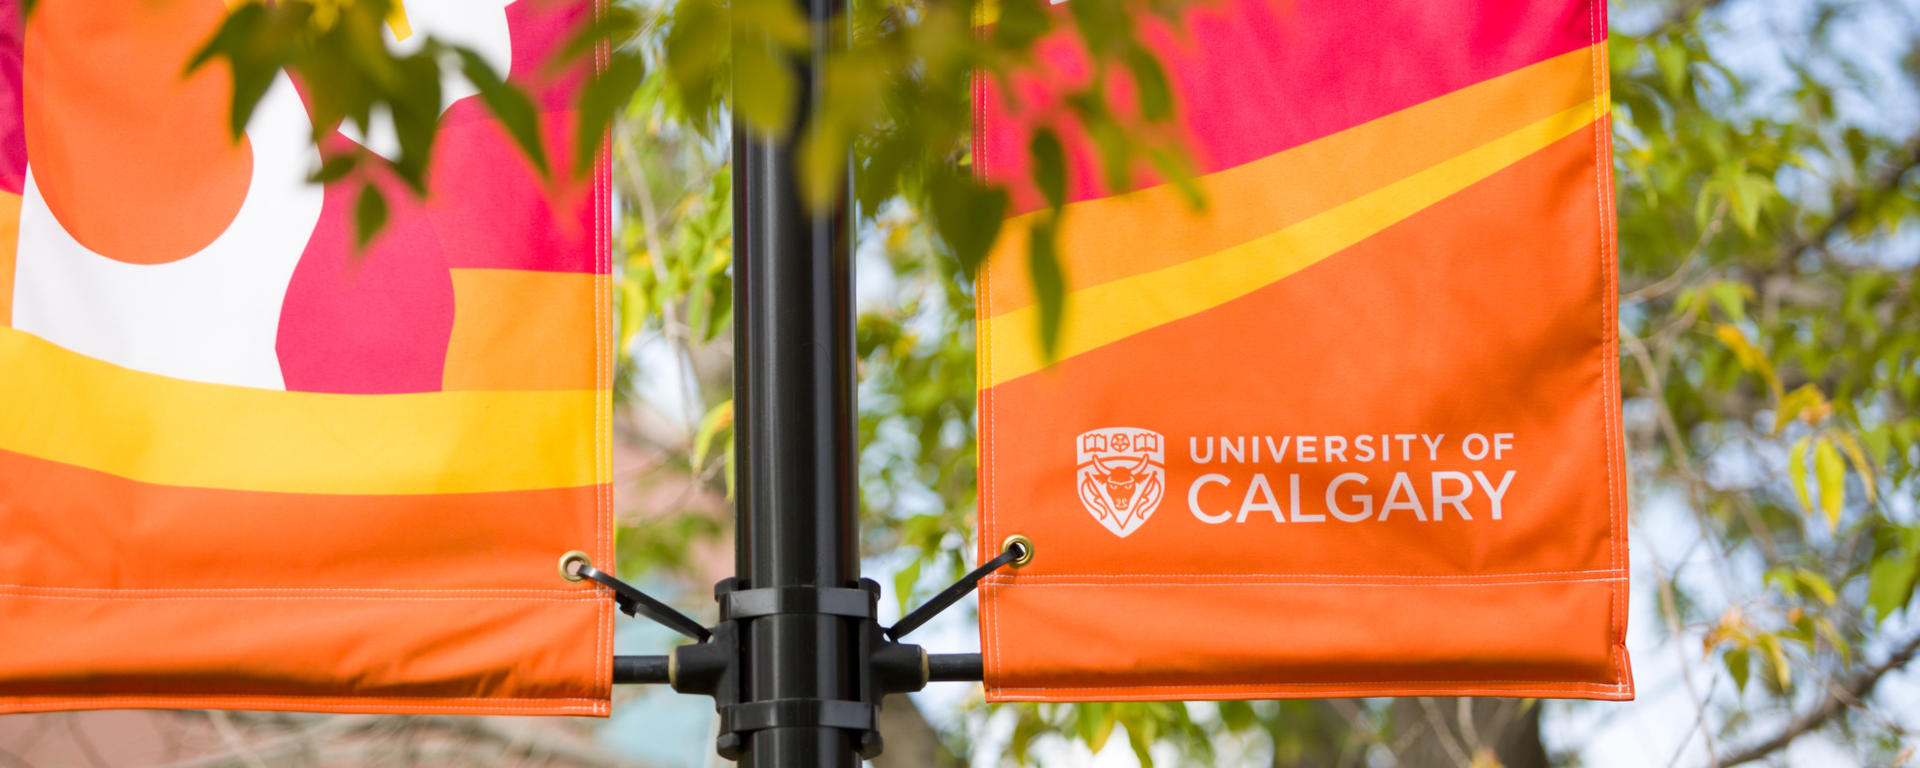 University of Calgary Banners